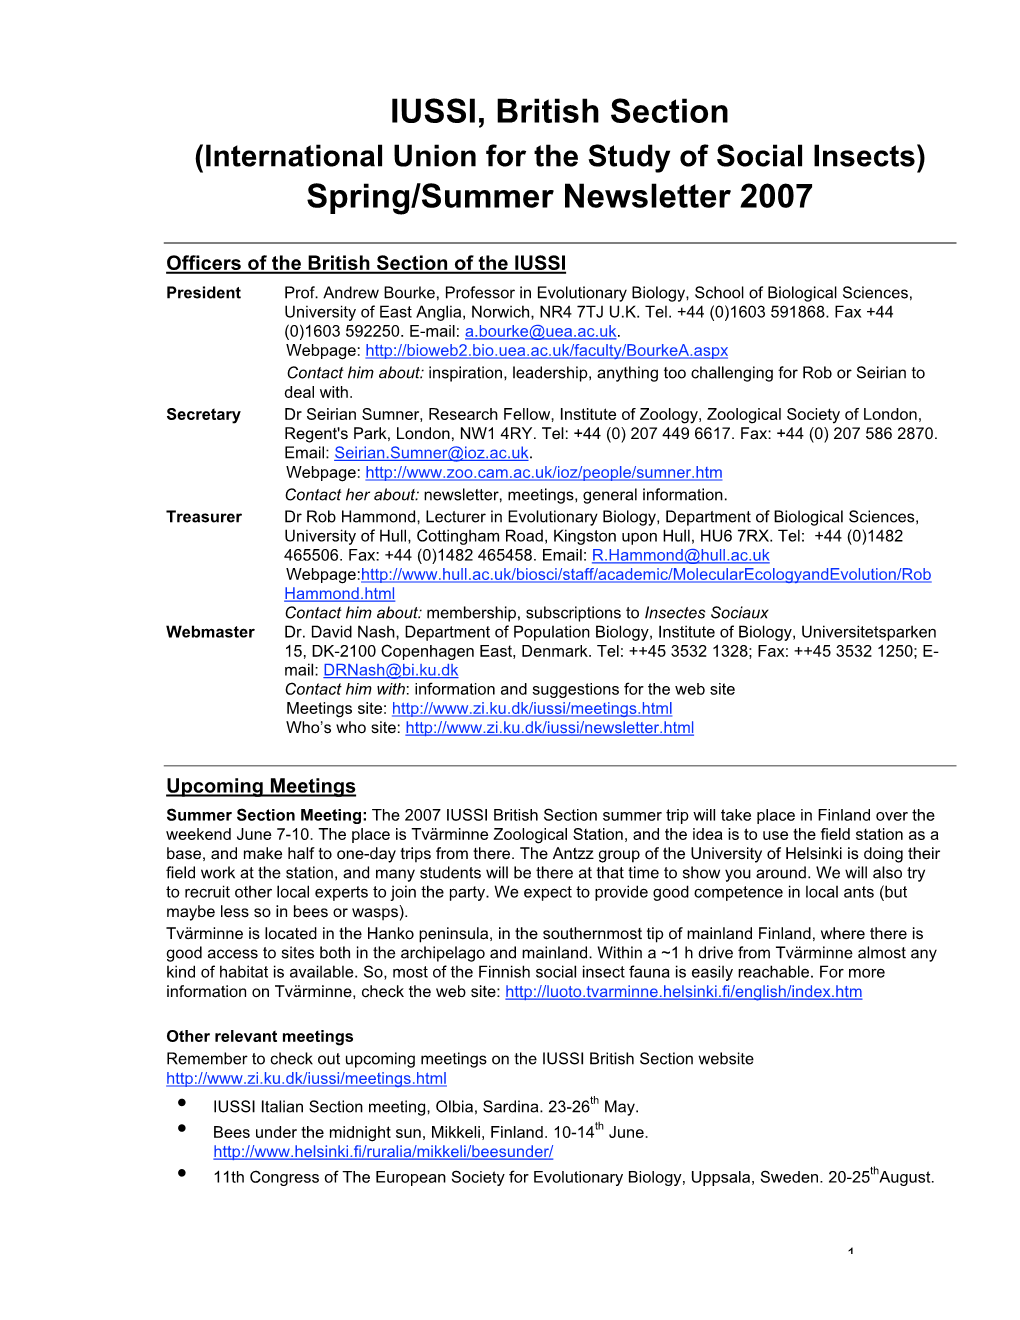 IUSSI, British Section Spring/Summer Newsletter 2007